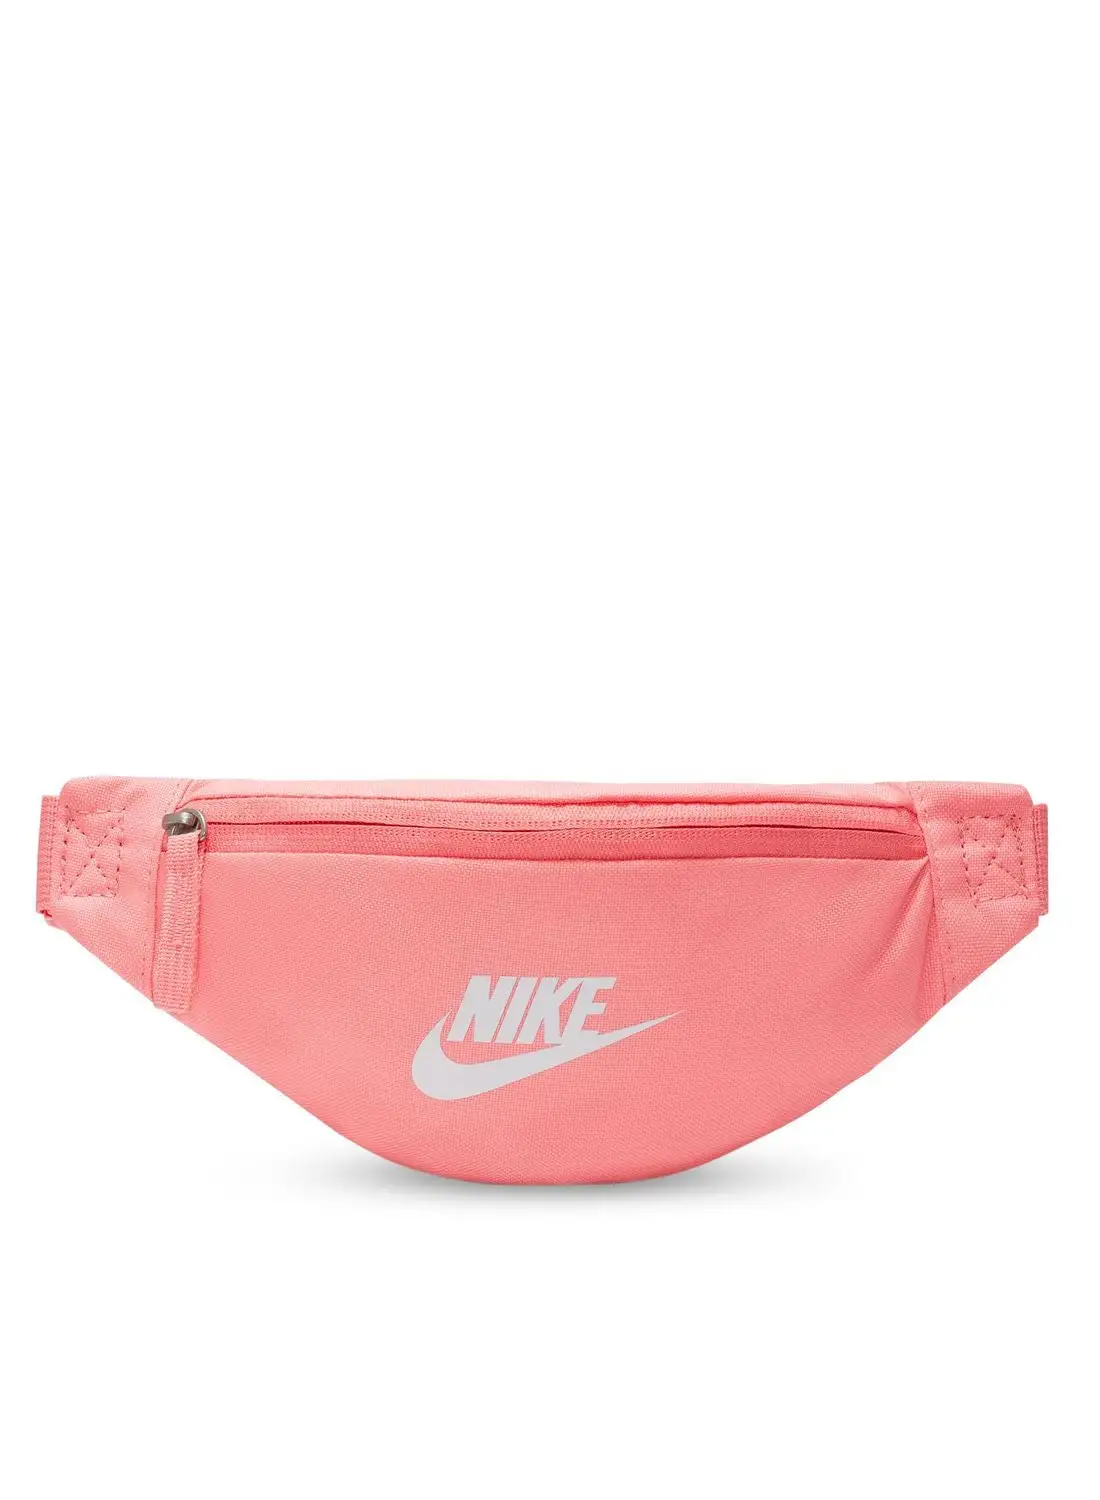 Nike Heritage Waistbag